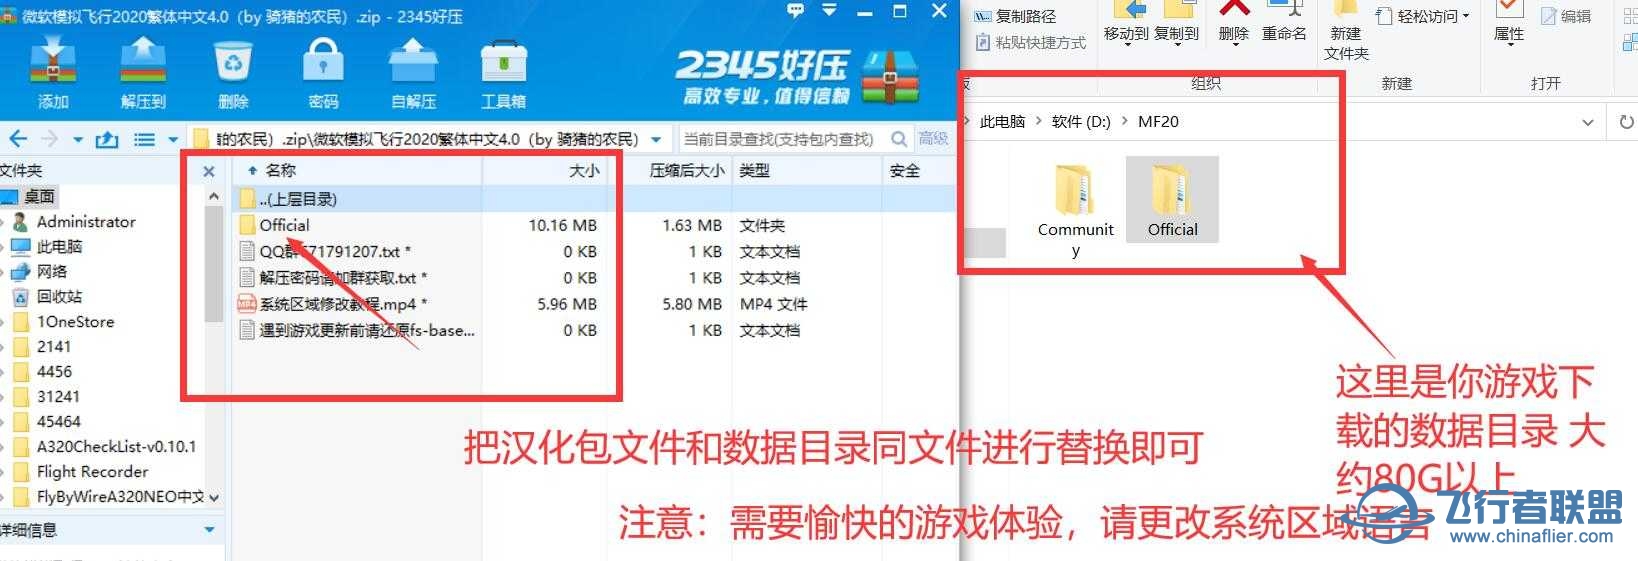 微软模拟飞行2020 1.18.14 繁体中文4.0发布版-6647 